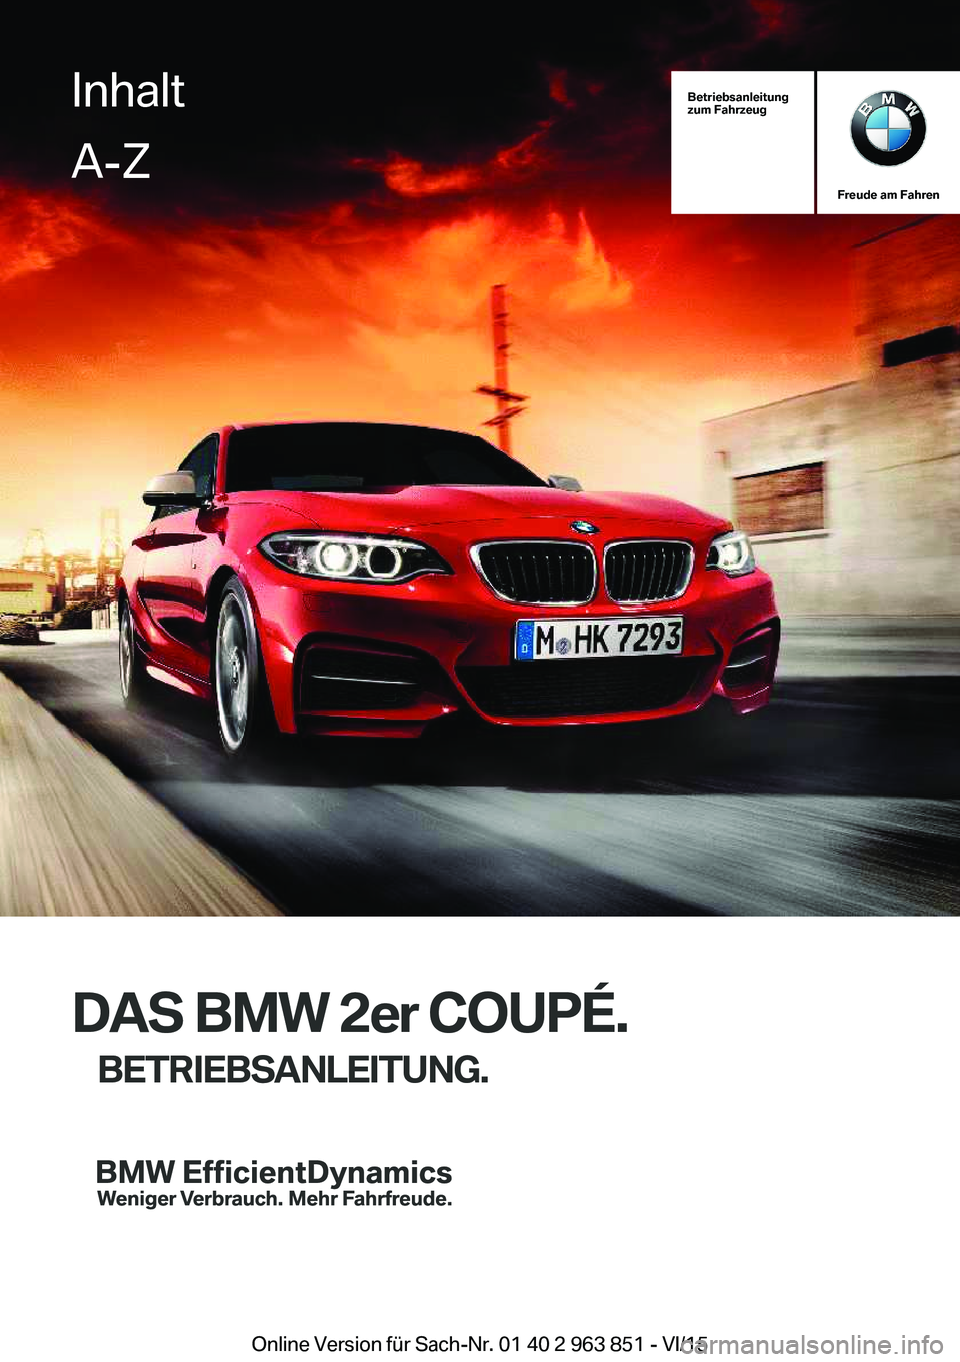 BMW 2 SERIES COUPE 2016  Betriebsanleitungen (in German) Betriebsanleitung
zum Fahrzeug
Freude am Fahren
DAS BMW 2er COUPÉ.
BETRIEBSANLEITUNG.
InhaltA-Z
Online Version für Sach-Nr. 01 40 2 963 851 - VI/15   